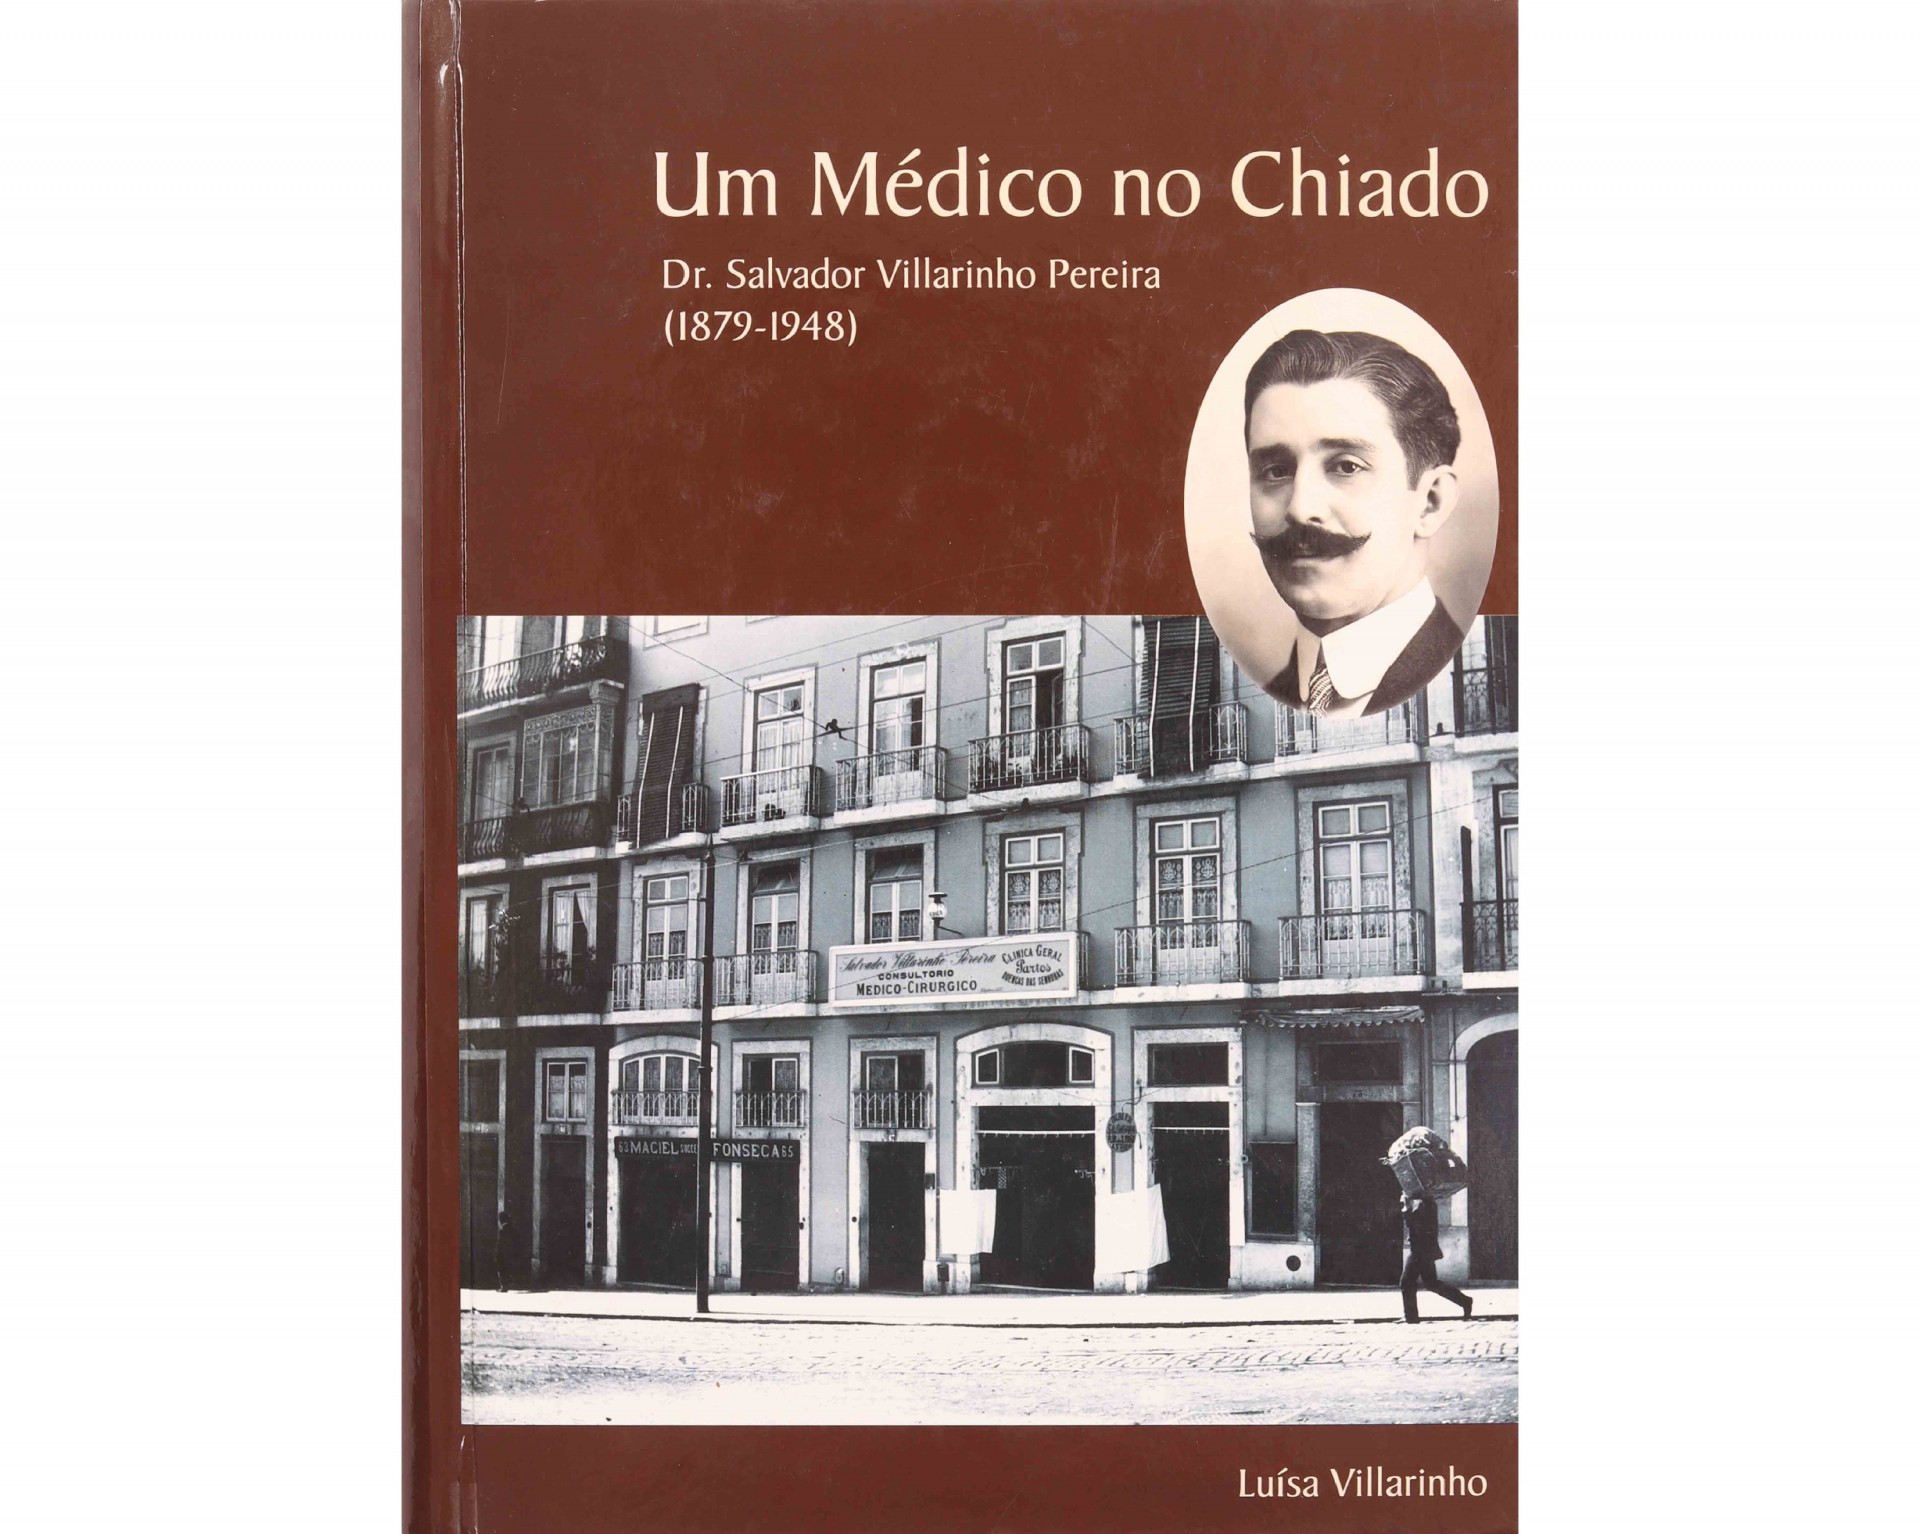 UM MÉDICO NO CHIADO: DR. SALVADOR VILLARINHO PEREIRA (1879-1948)